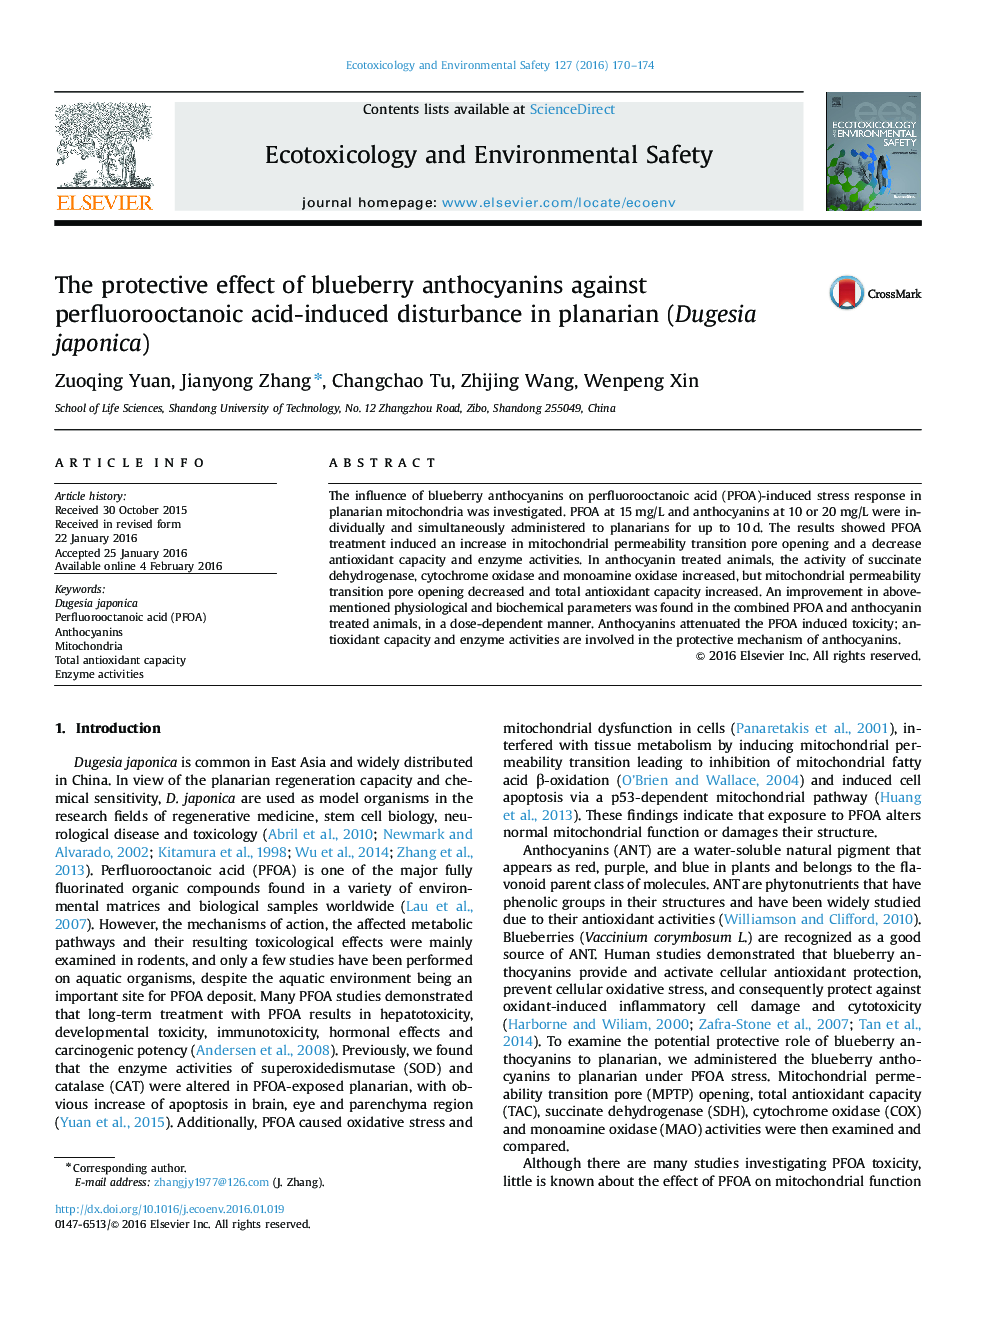 اثر حفاظتی از آنتوسیانین زغال اخته در برابر اختلال ناشی از اسید perfluorooctanoic در planarian (Dugesia ژاپونی)